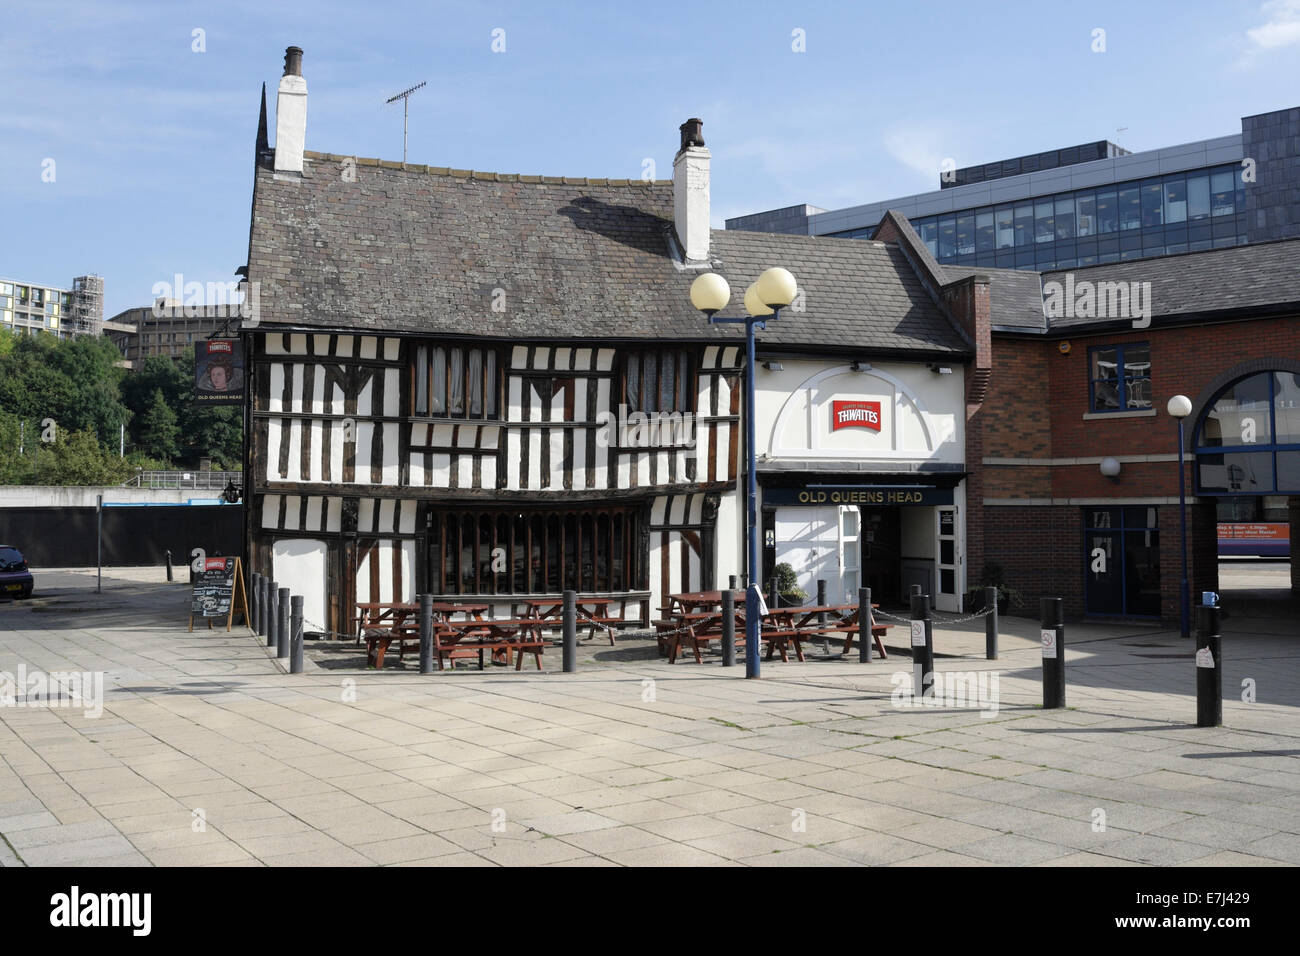 La maison publique Old Queens Head, un bâtiment tudor à pans de bois dans le centre-ville de Sheffield, Angleterre, pub anglais historique, bâtiment classé 15th siècle Banque D'Images